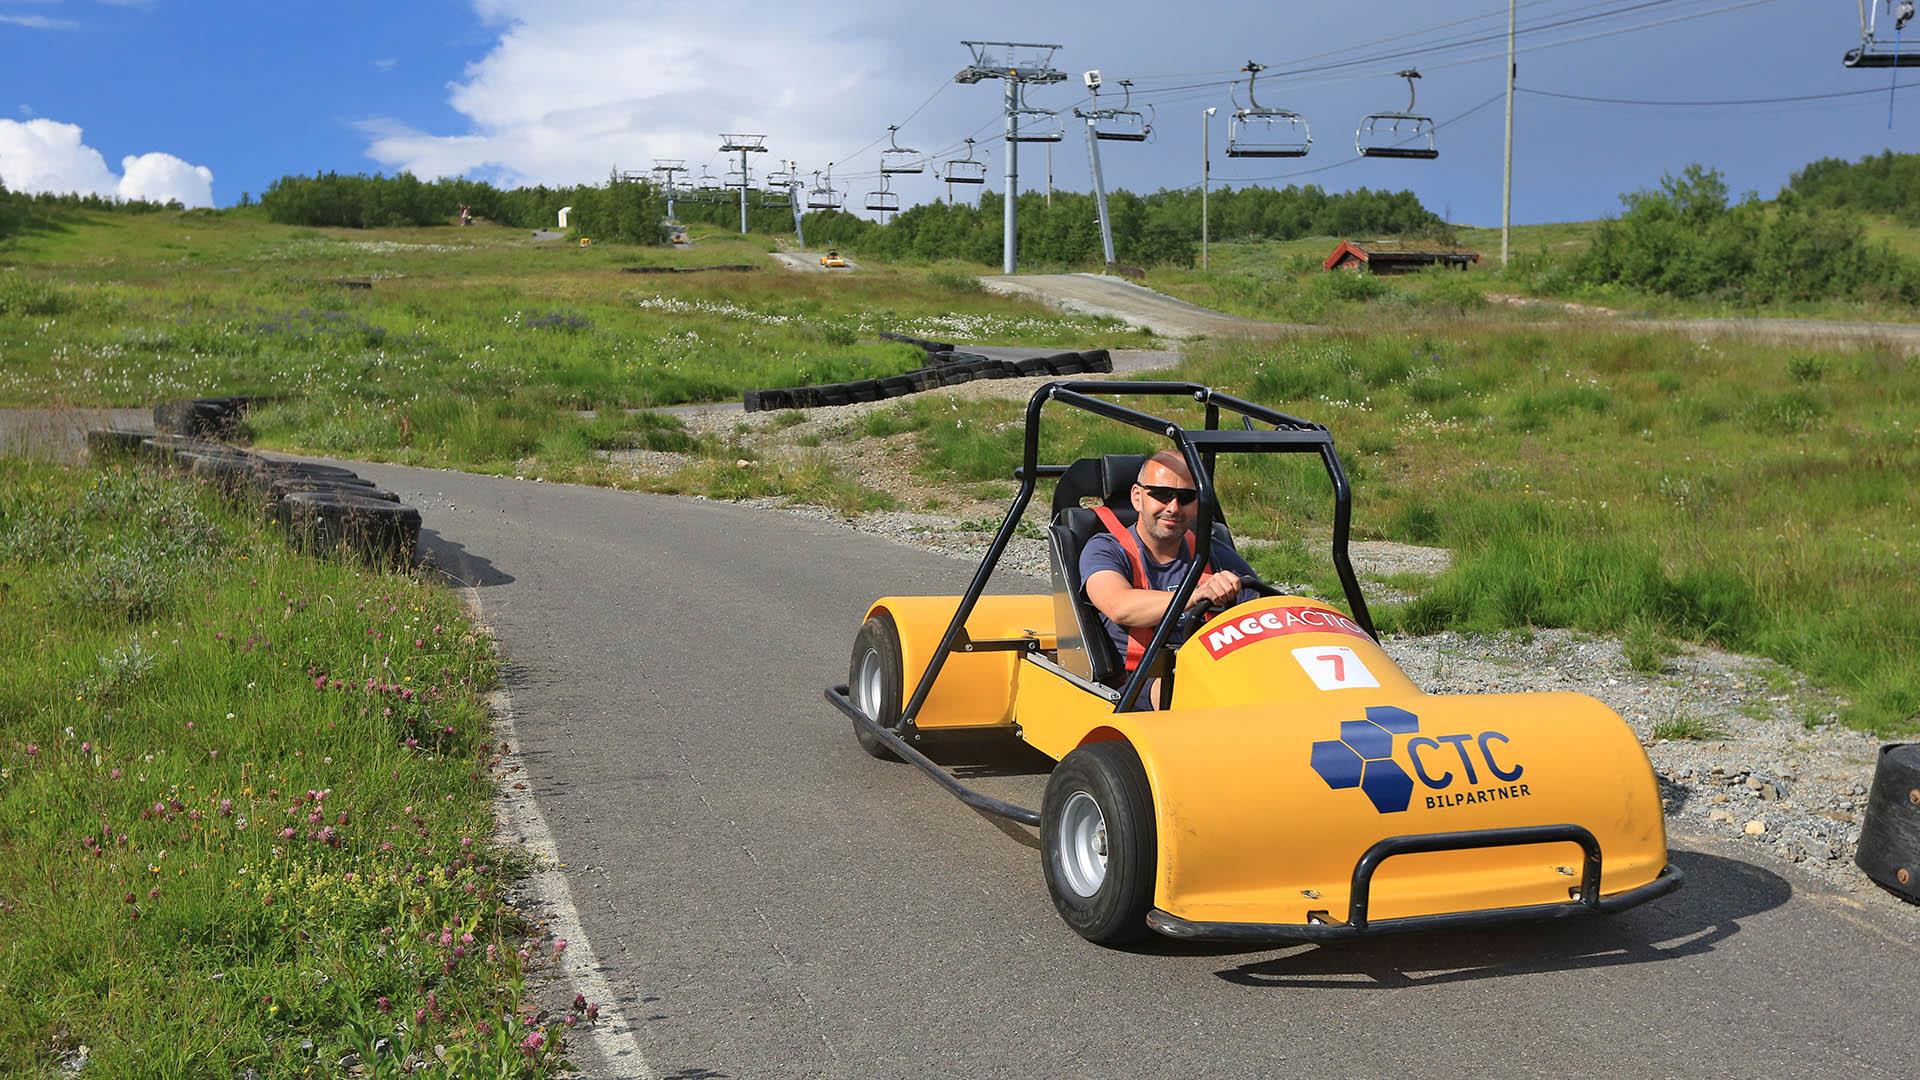 En mann kjører en gul olabil ned en asfaltert downhill-løype. En sommerskilift ses i bakgrunnen.